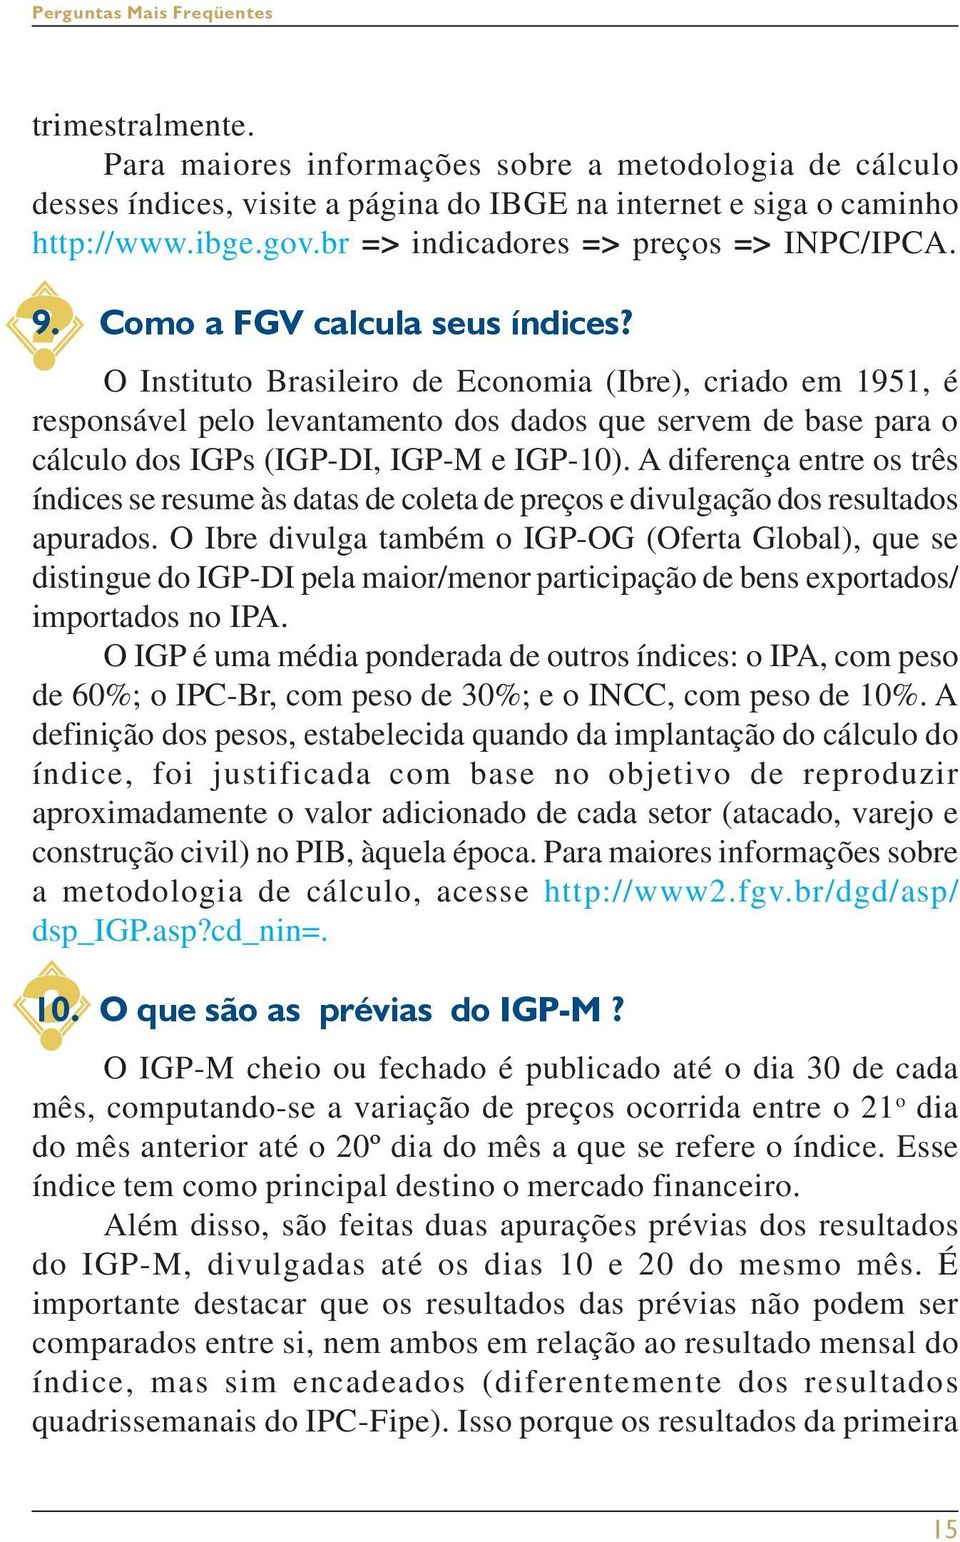 O Instituto Brasileiro de Economia (Ibre), criado em 1951, é responsável pelo levantamento dos dados que servem de base para o cálculo dos IGPs (IGP-DI, IGP-M e IGP-10).